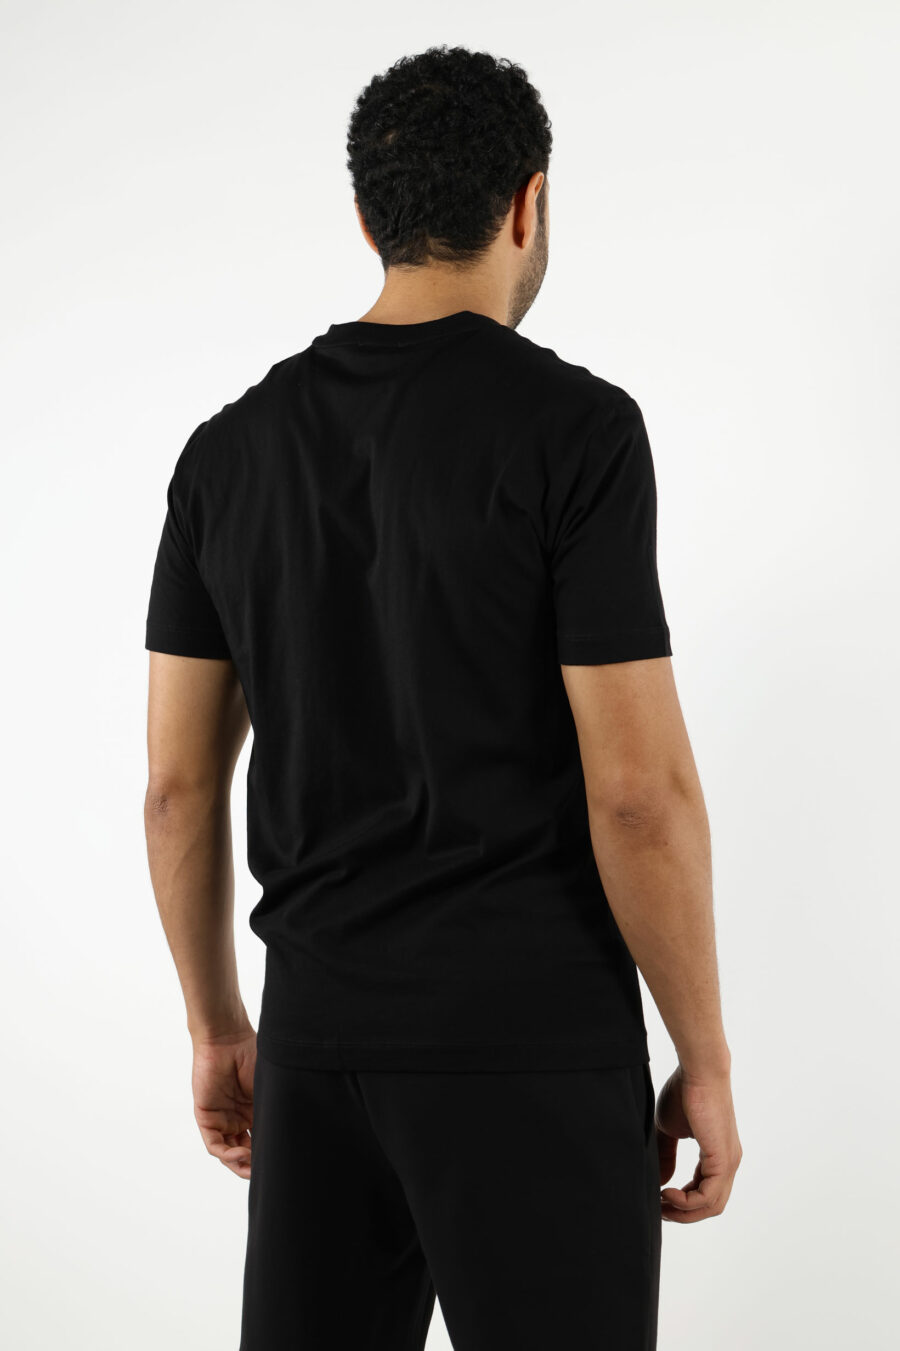 Schwarzes T-Shirt mit "lux identity" Maxilogo im Farbverlauf - 110865